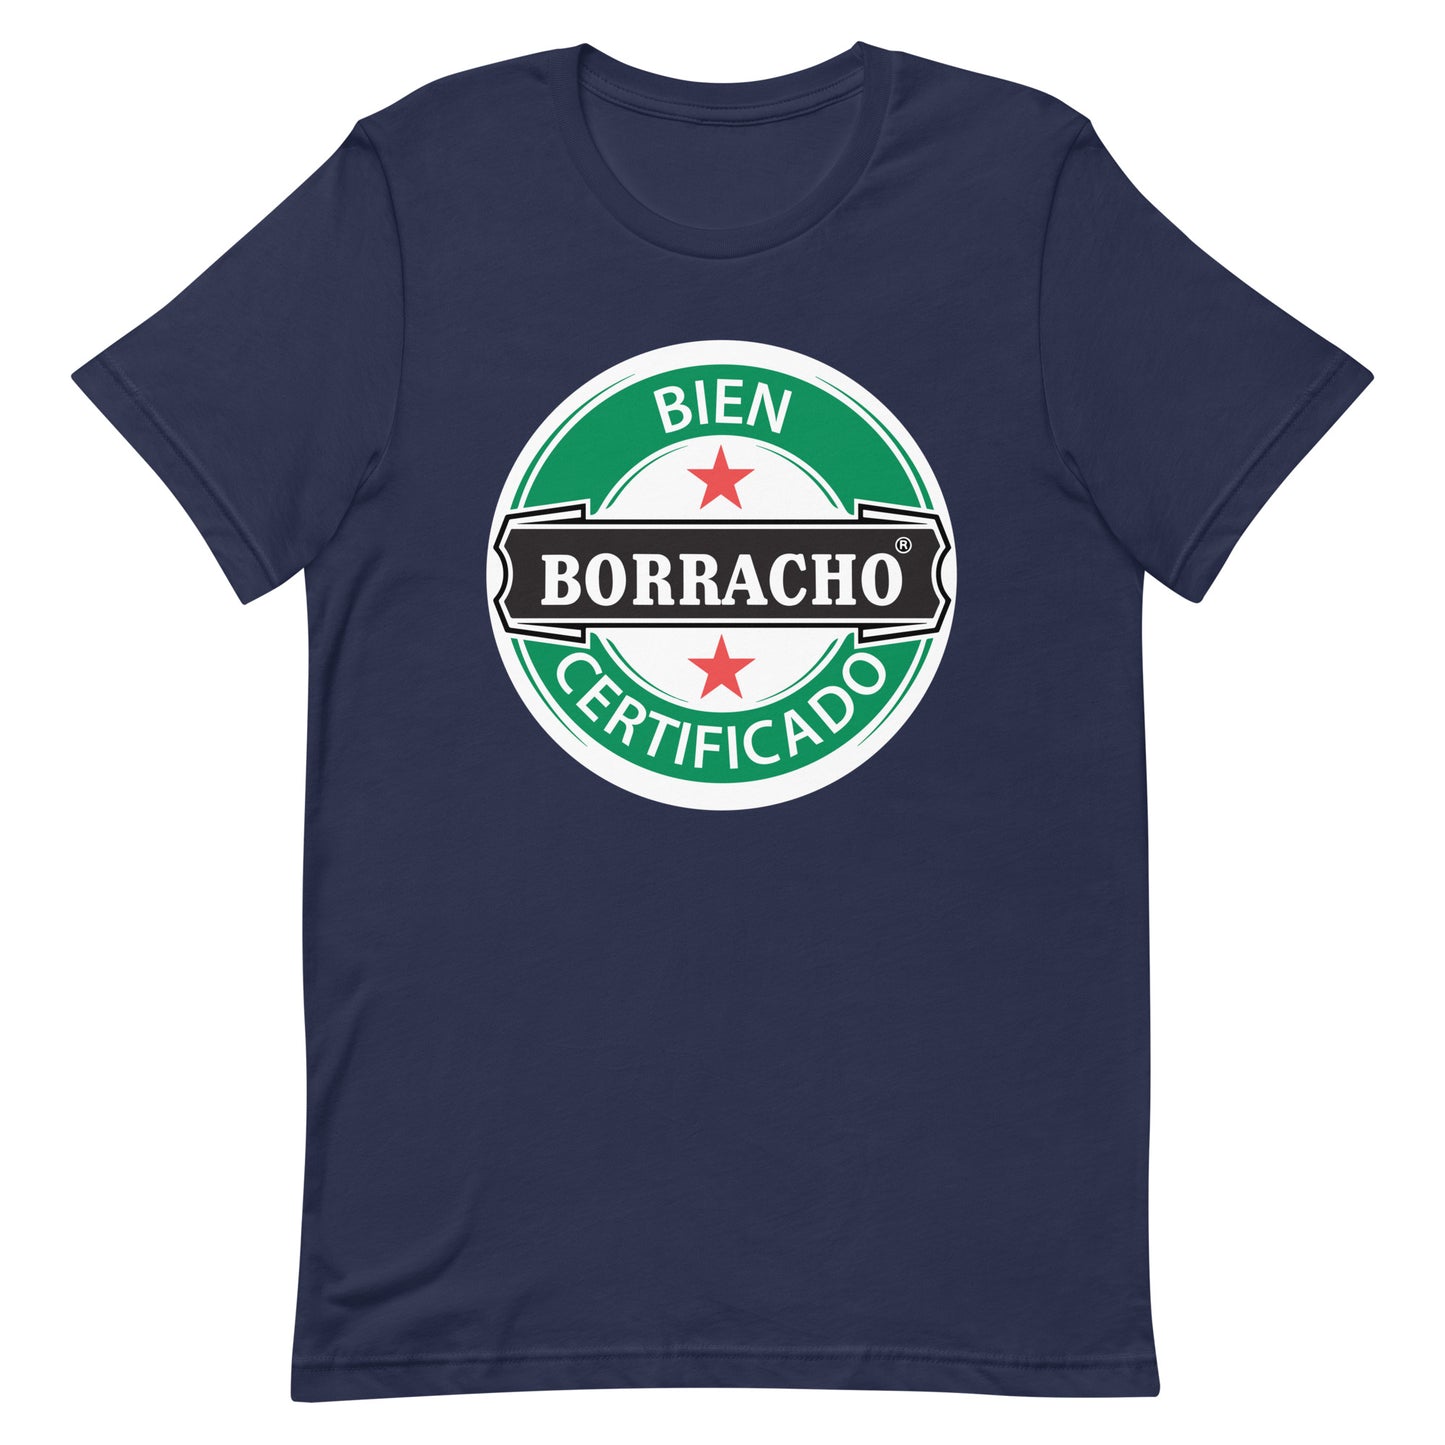 Bien Borracho Certificado T-Shirt